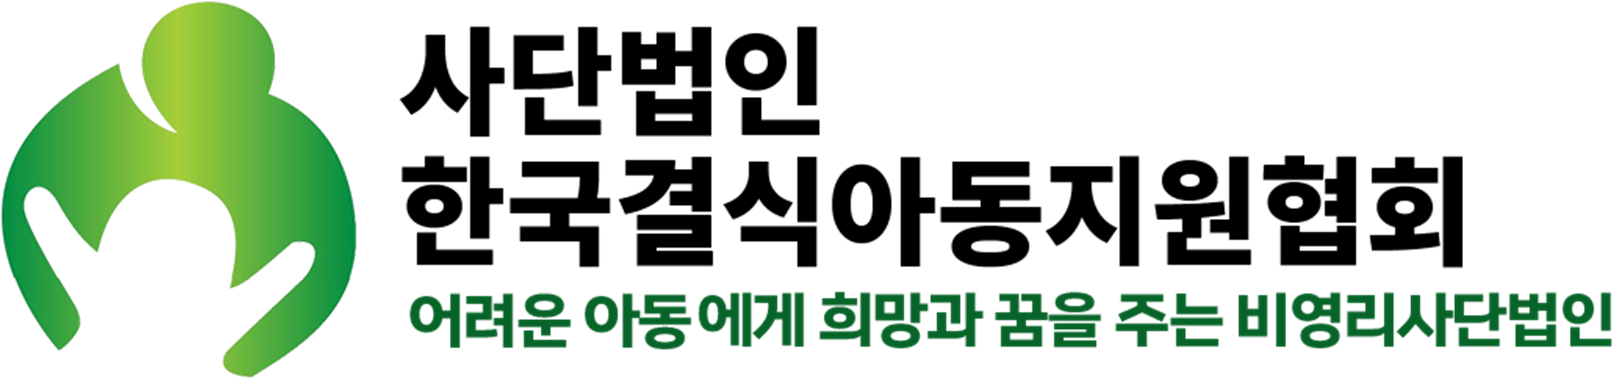 한국결식아동청소년지원협회